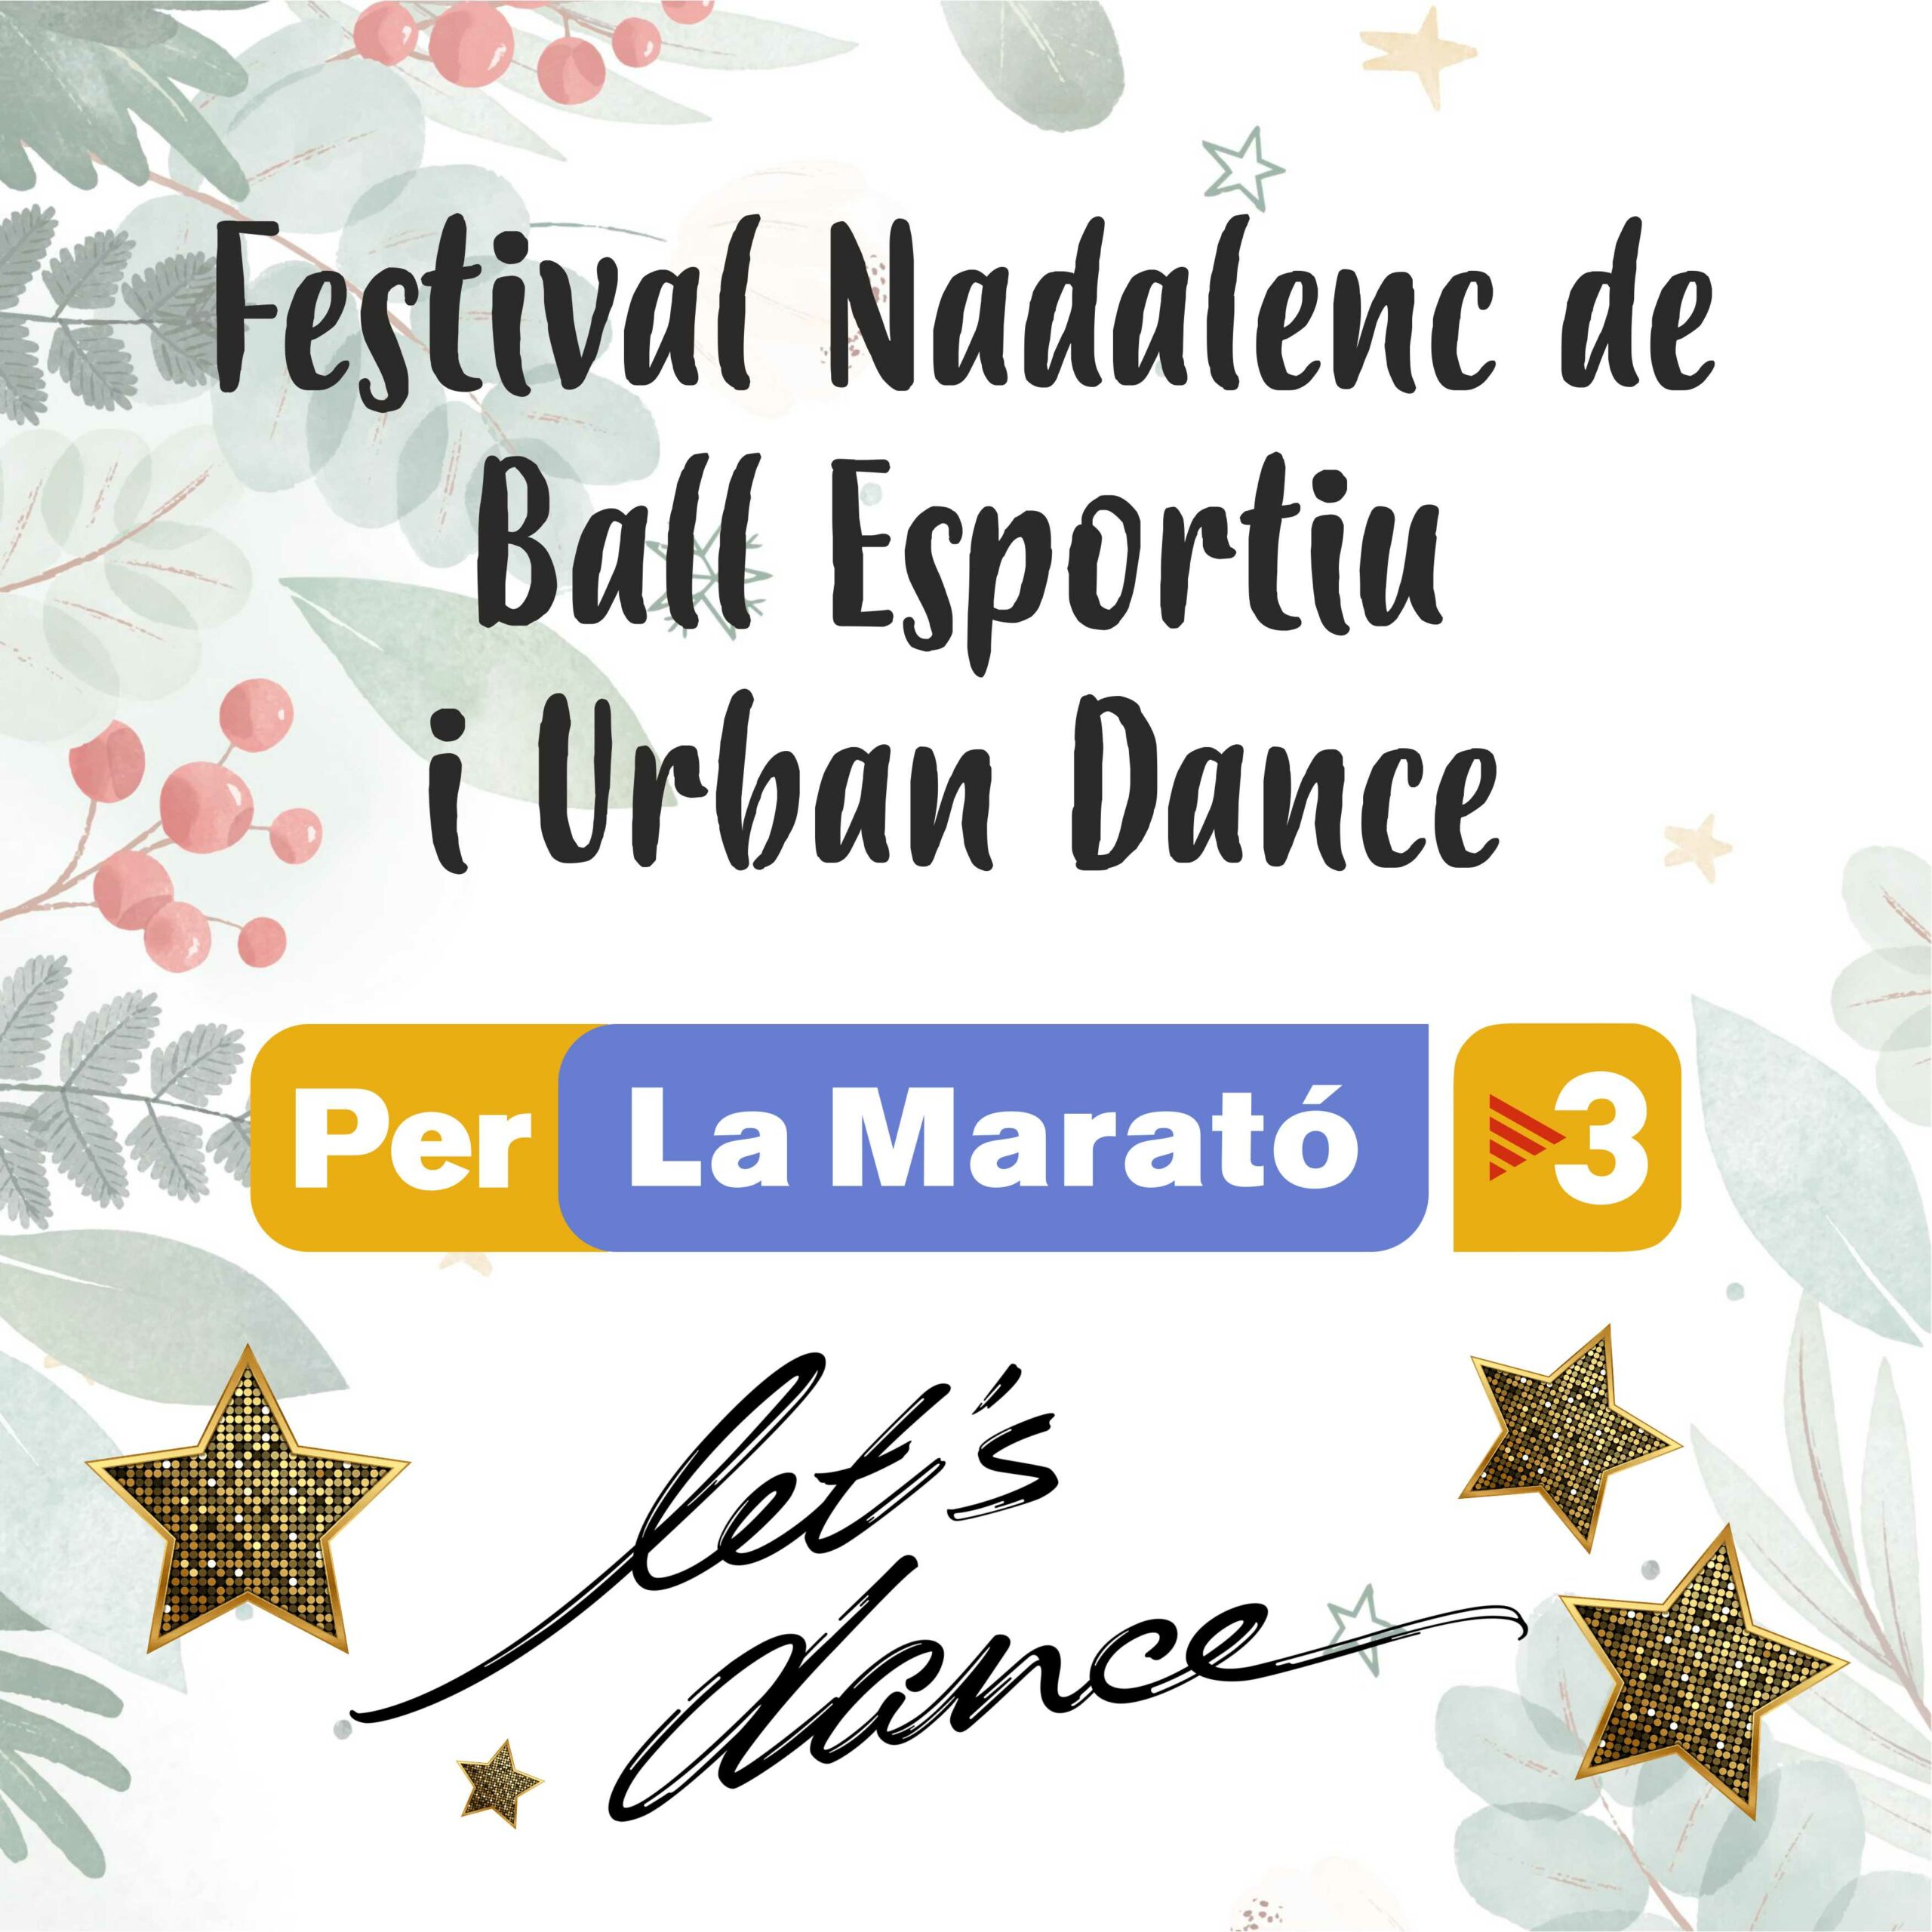 FESTIVAL NADALENC DE BALL ESPORTIU I URBAN DANCE